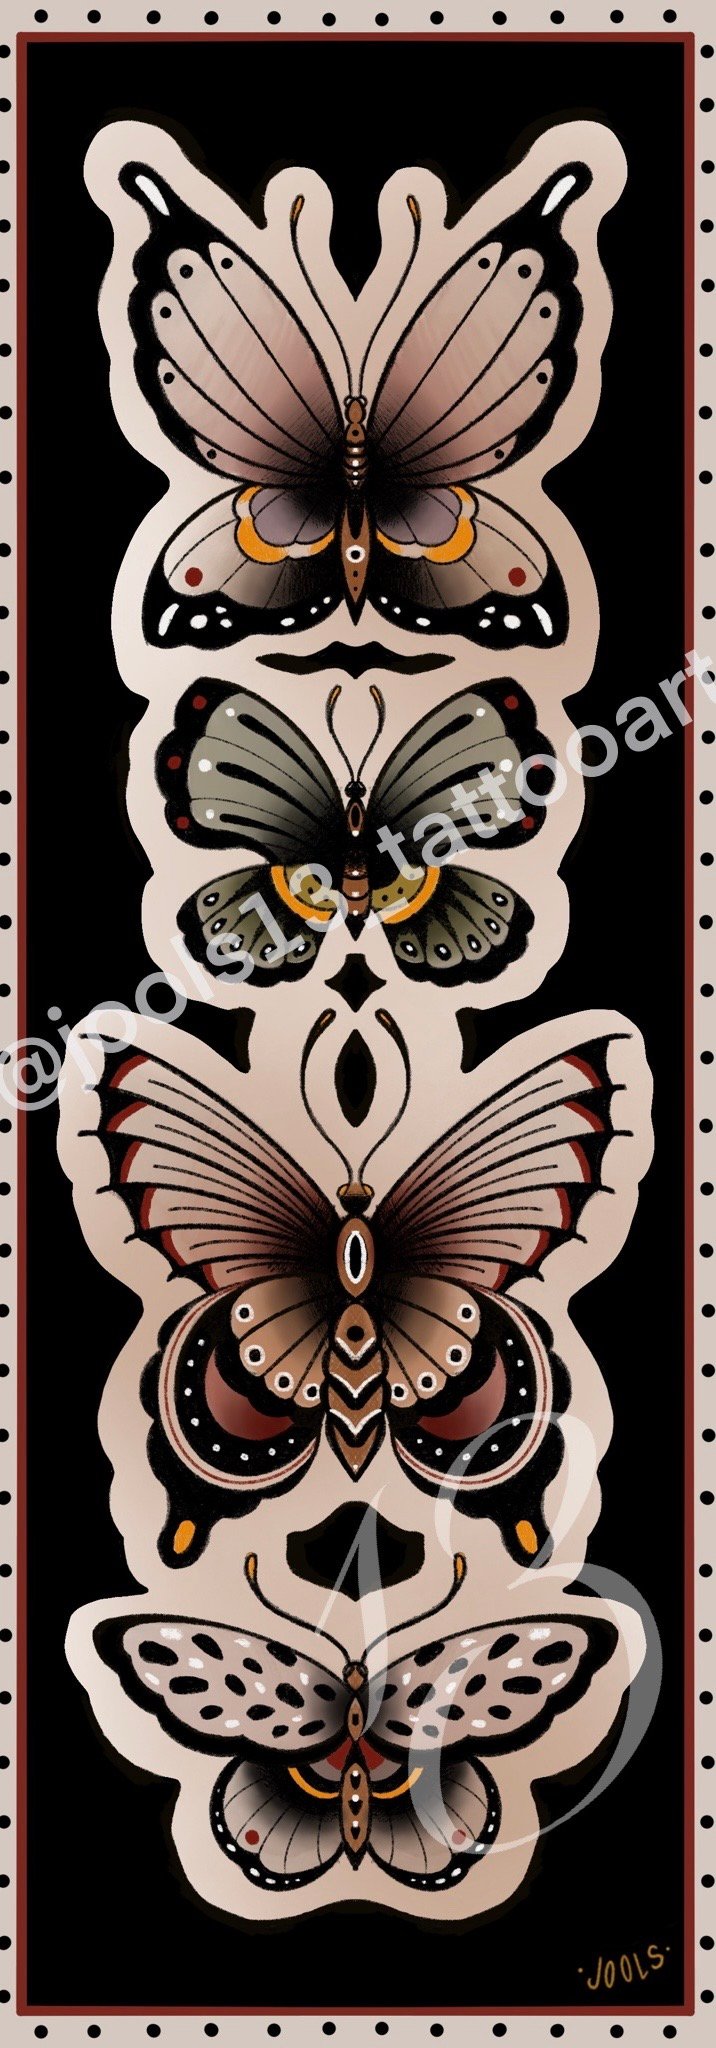 Artprint "Butterflies" by Jools